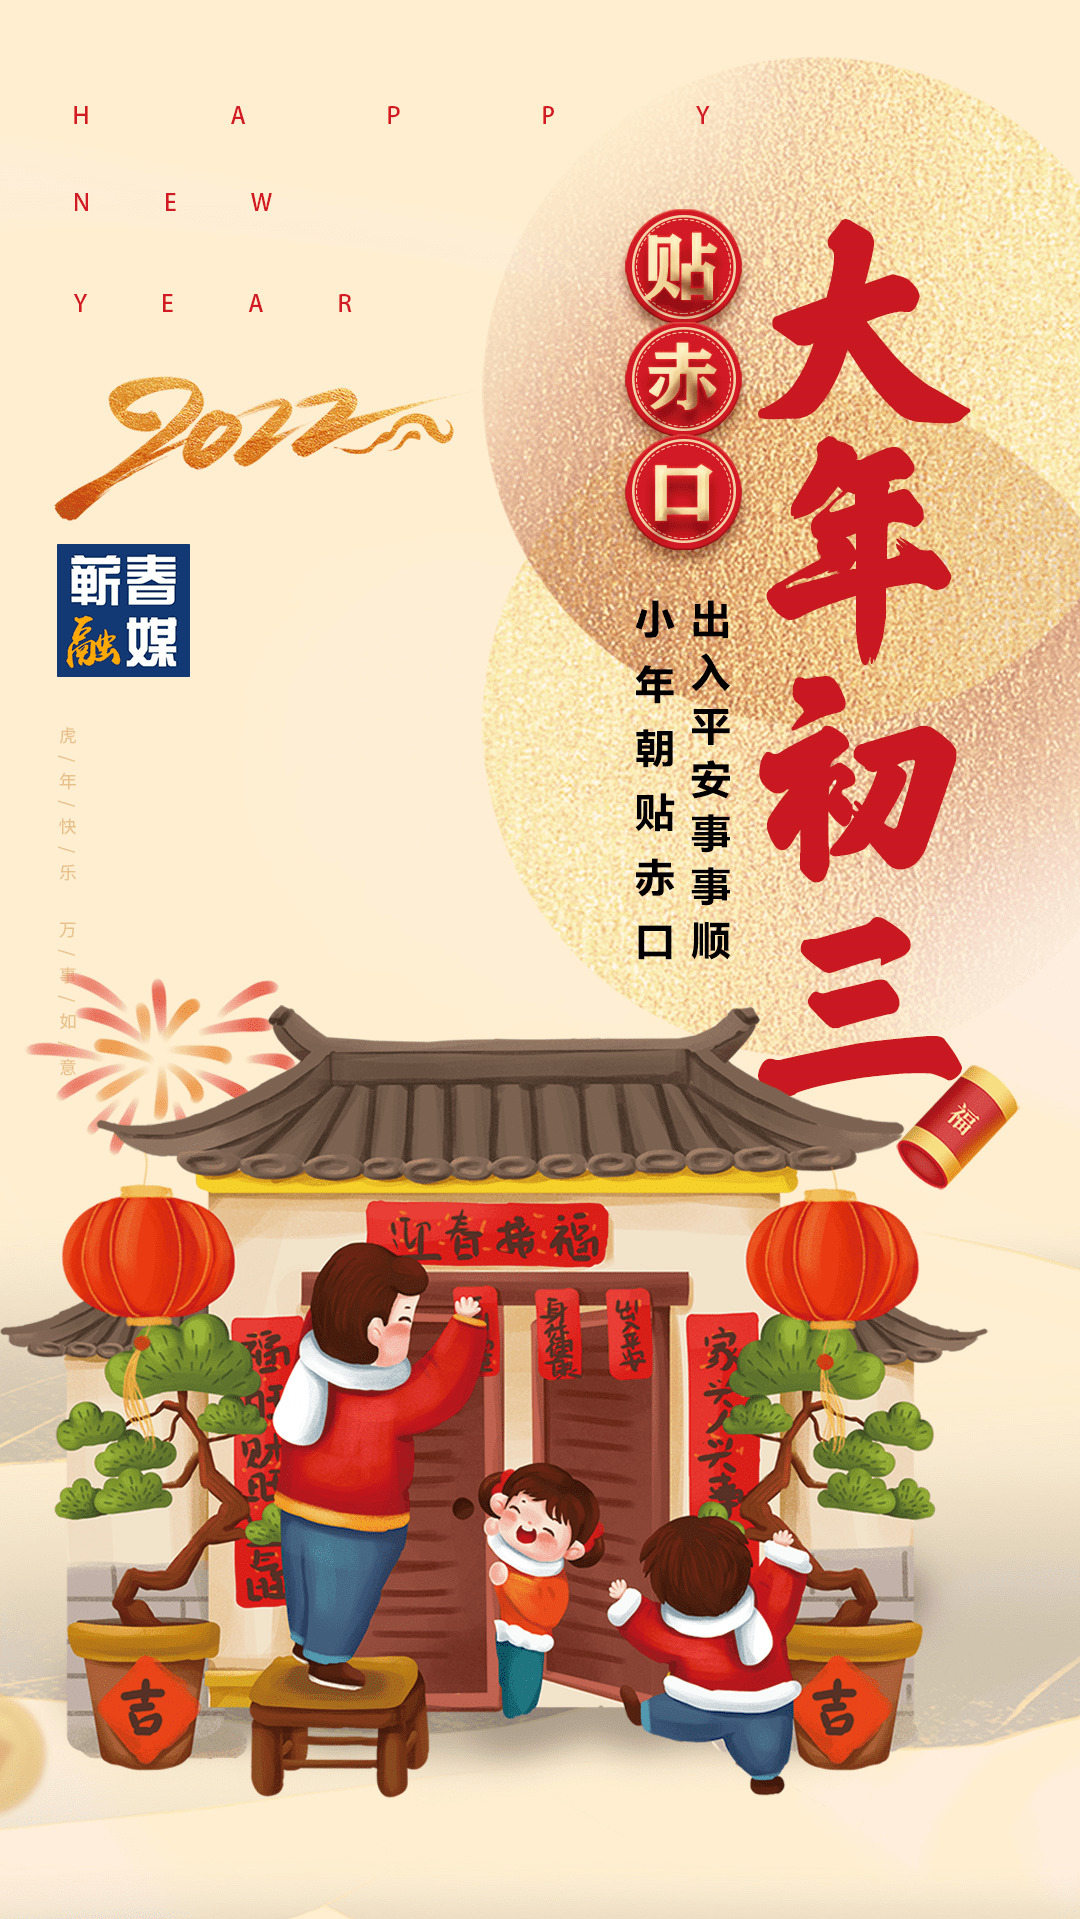 2月3日新年快乐正月初三自秦汉以来,传统的看法是正月初一日为鸡日